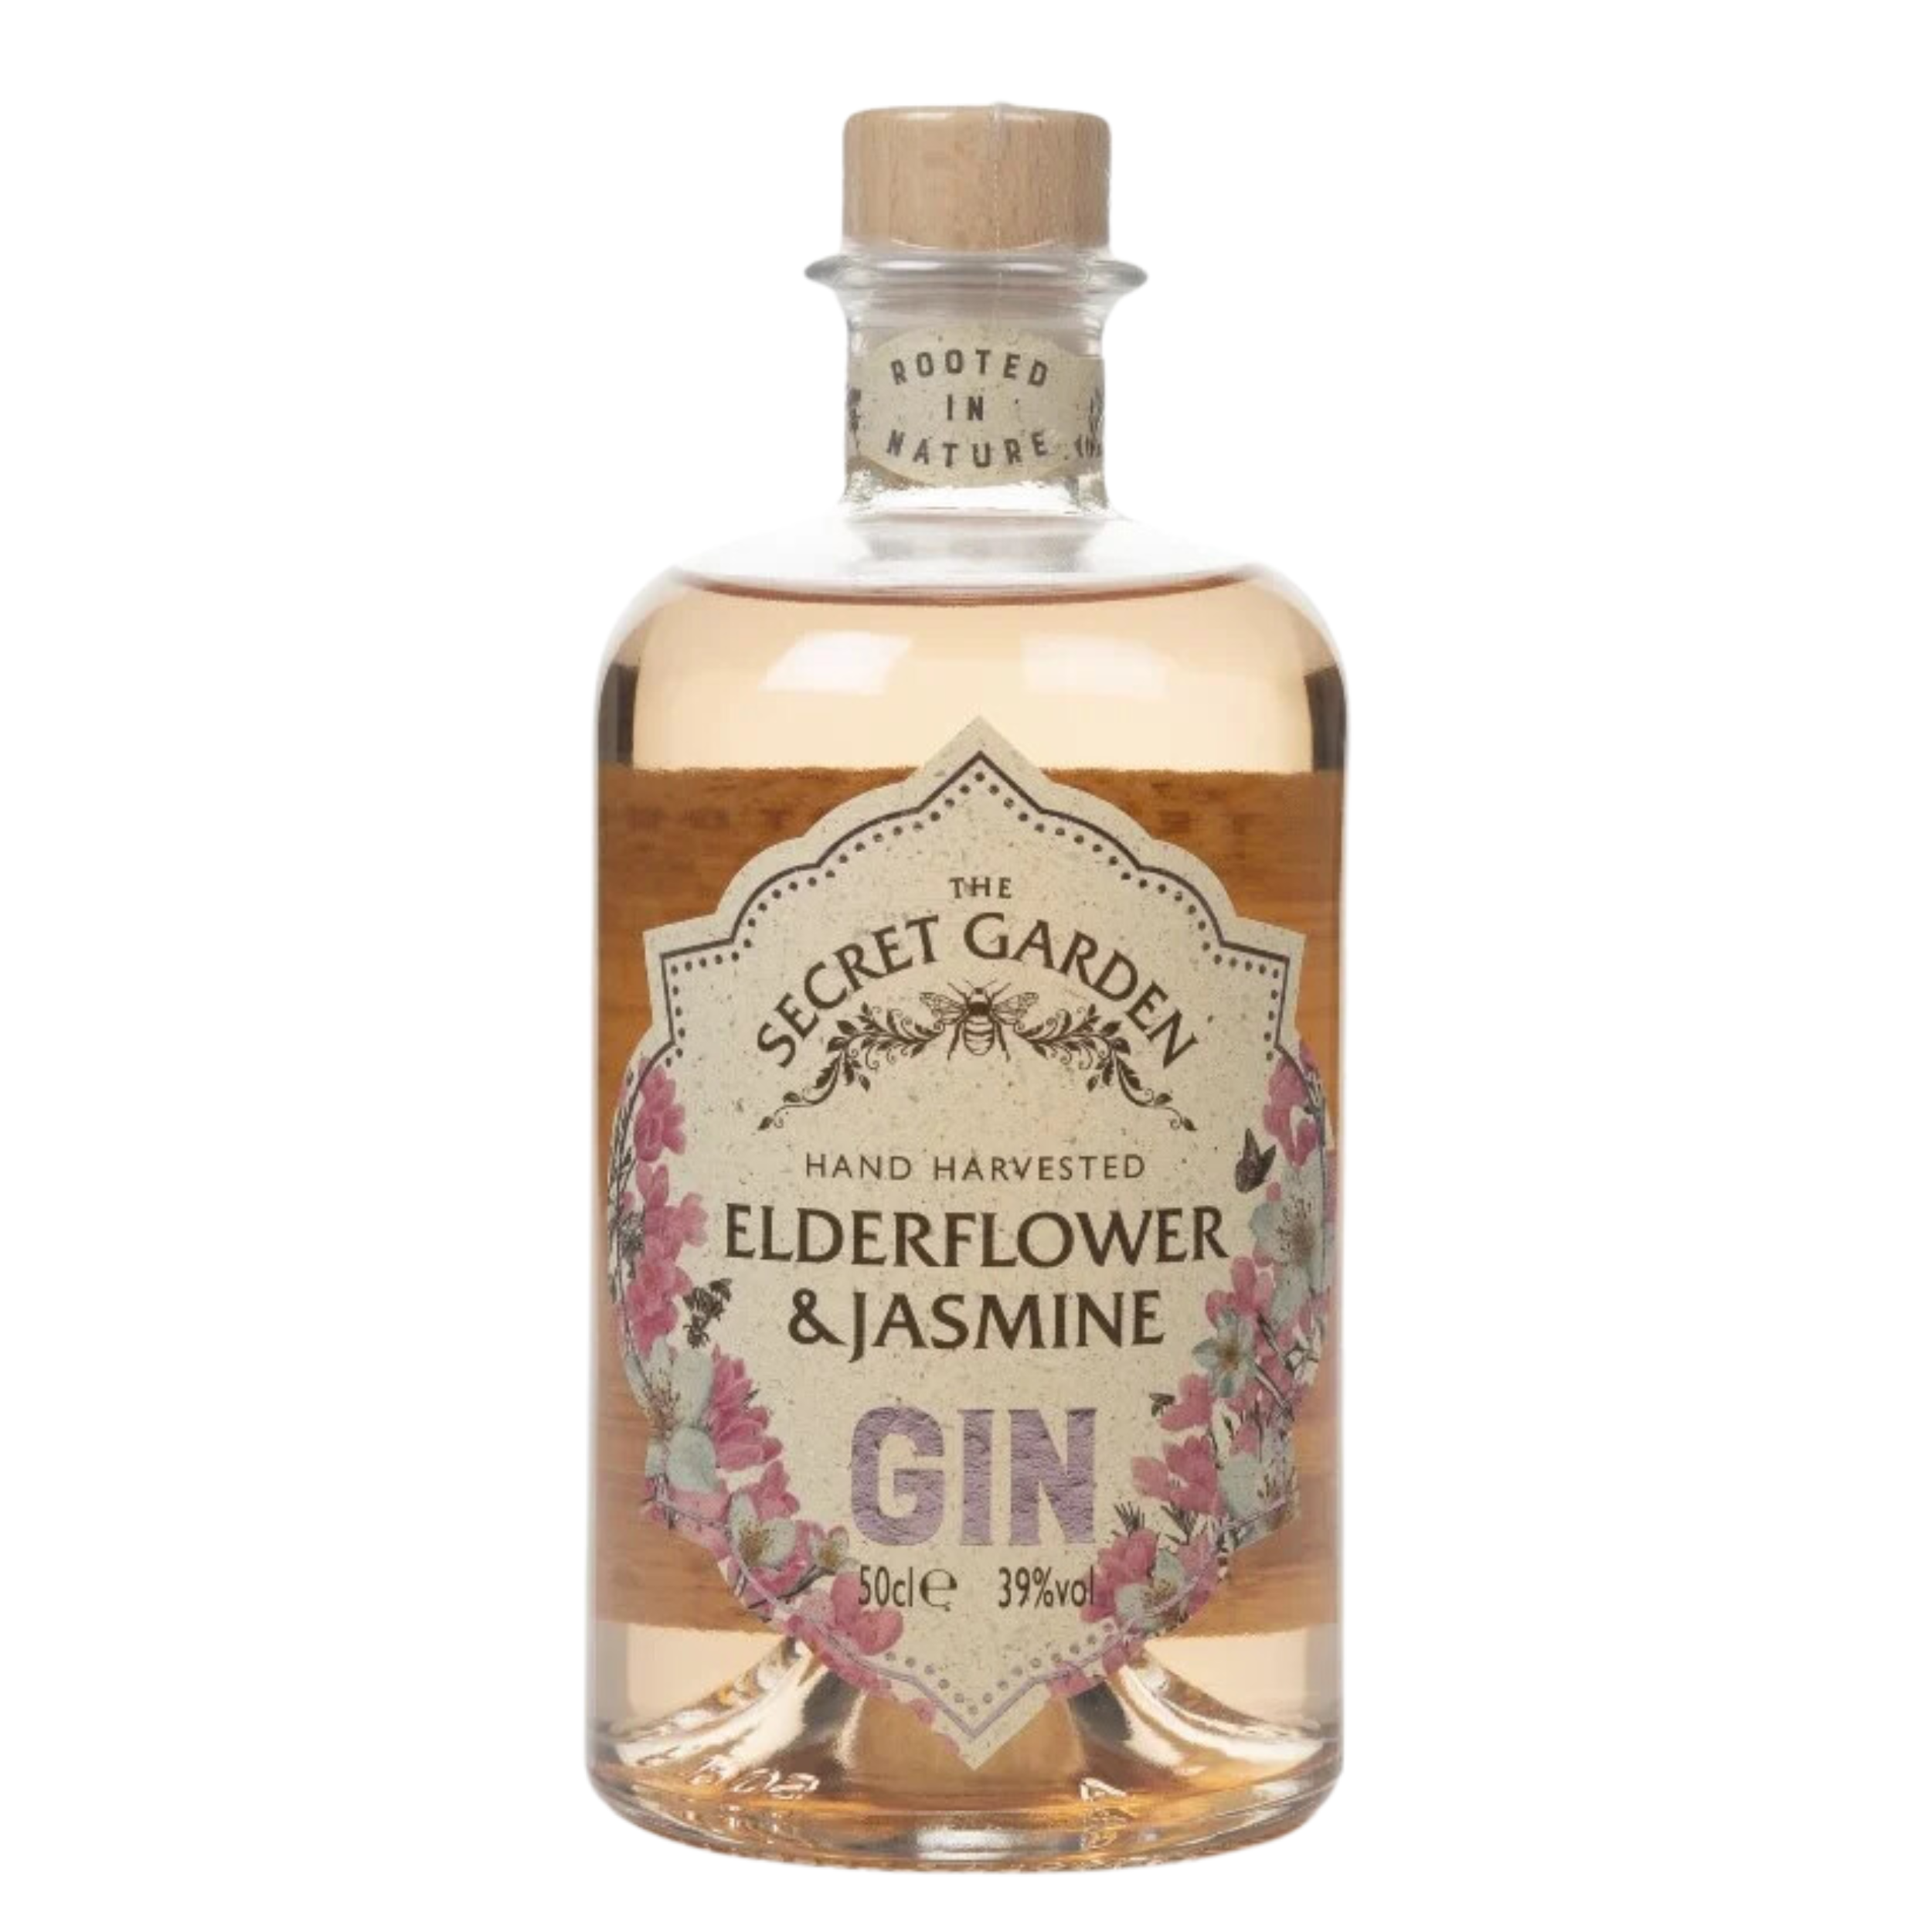 Elderflower-Jasmine-The-Secret-Garden-Gin